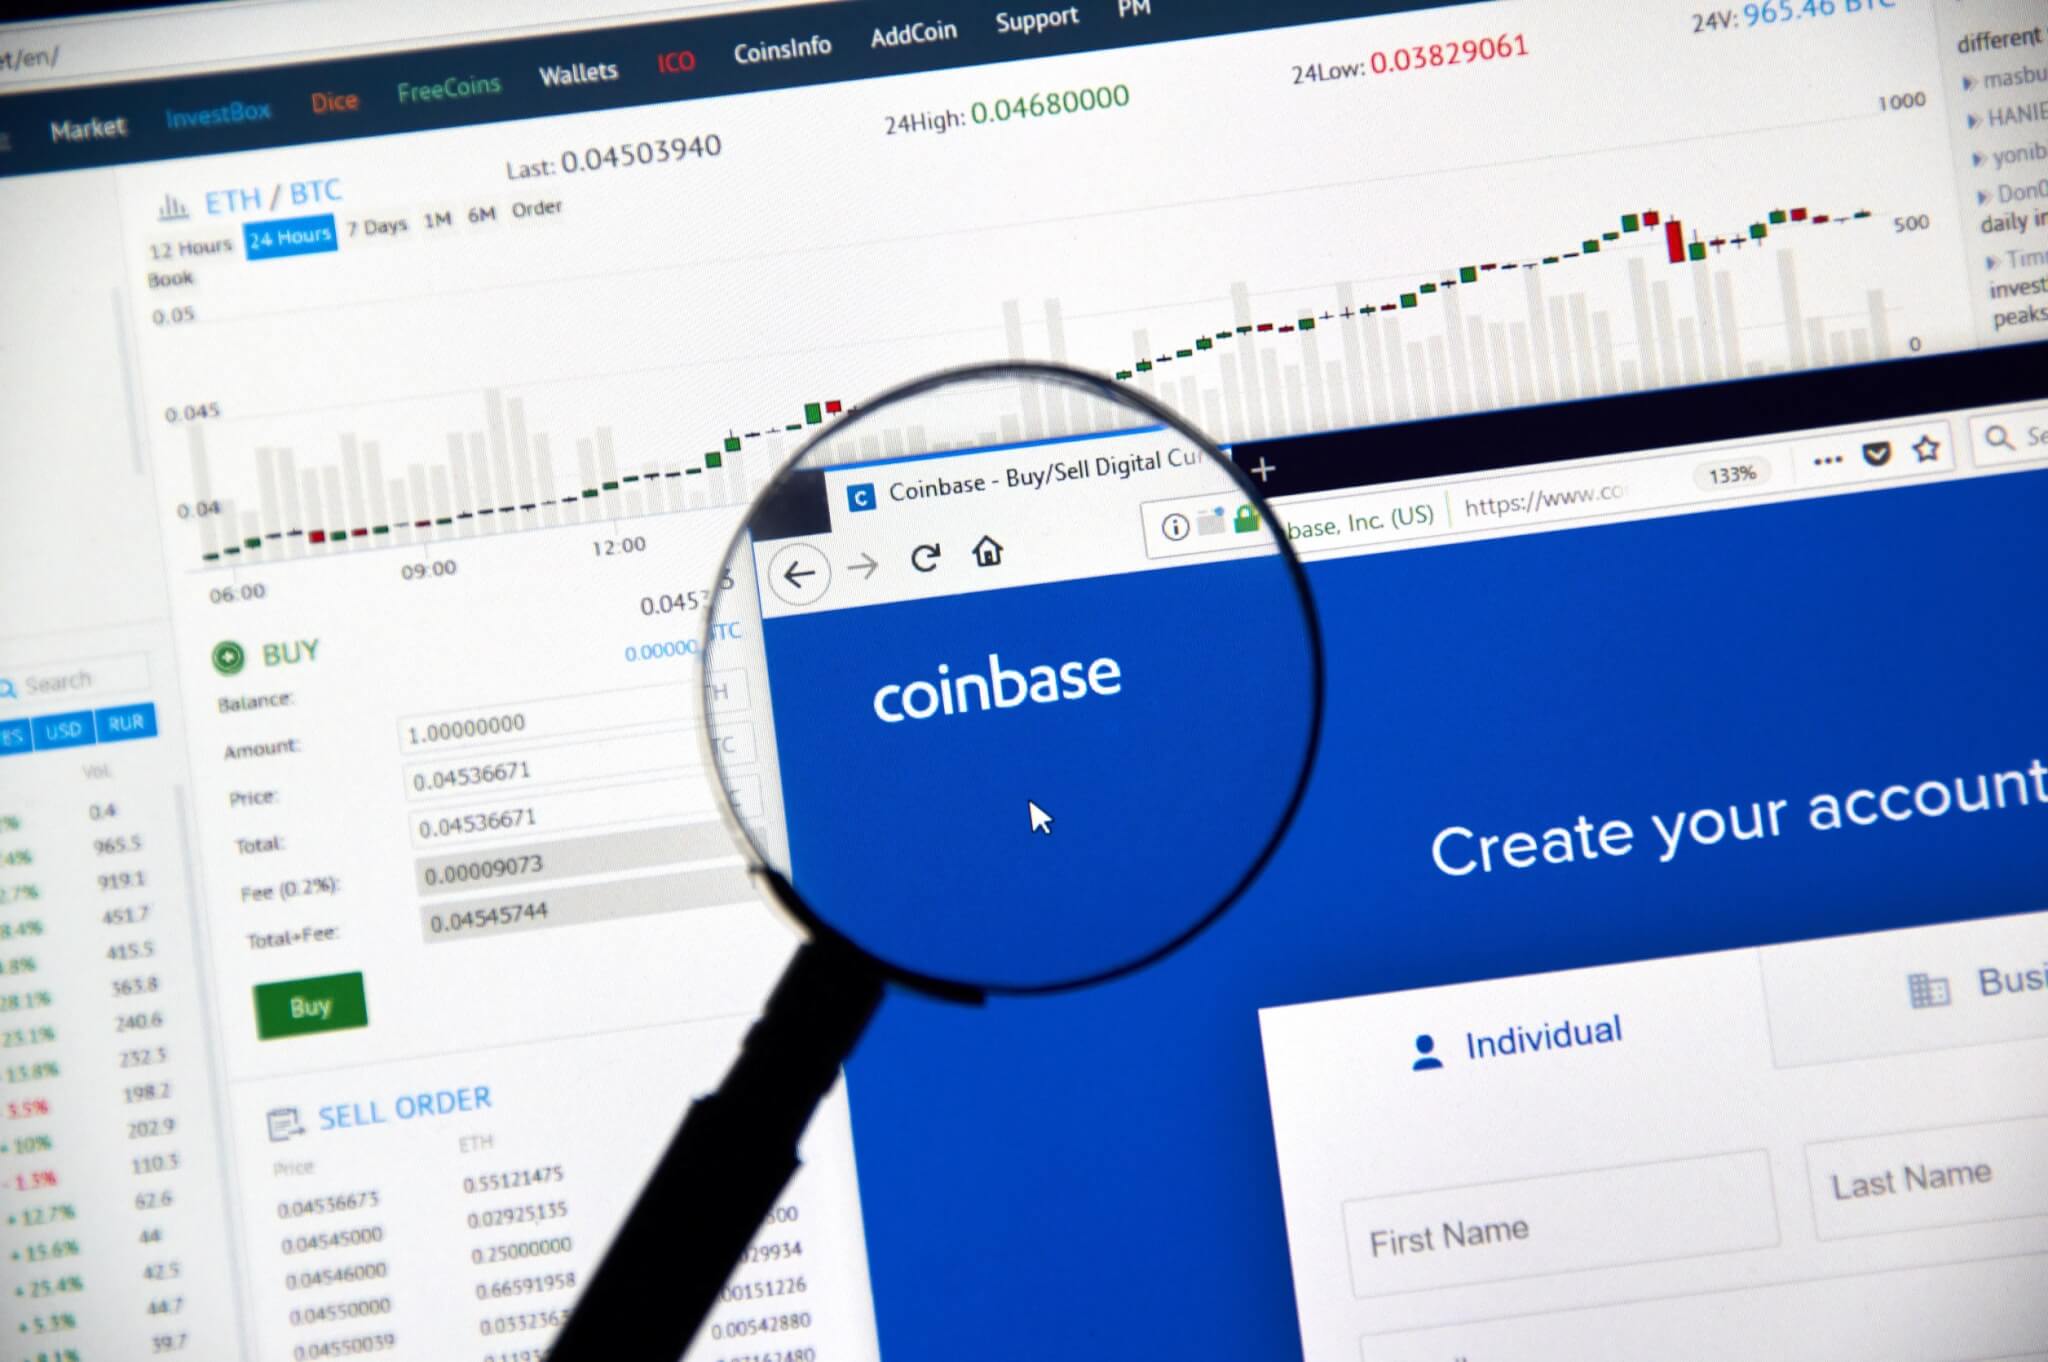 Giám đốc điều hành Coinbase đã bán cổ phiếu công ty trước khiếu nại của SEC